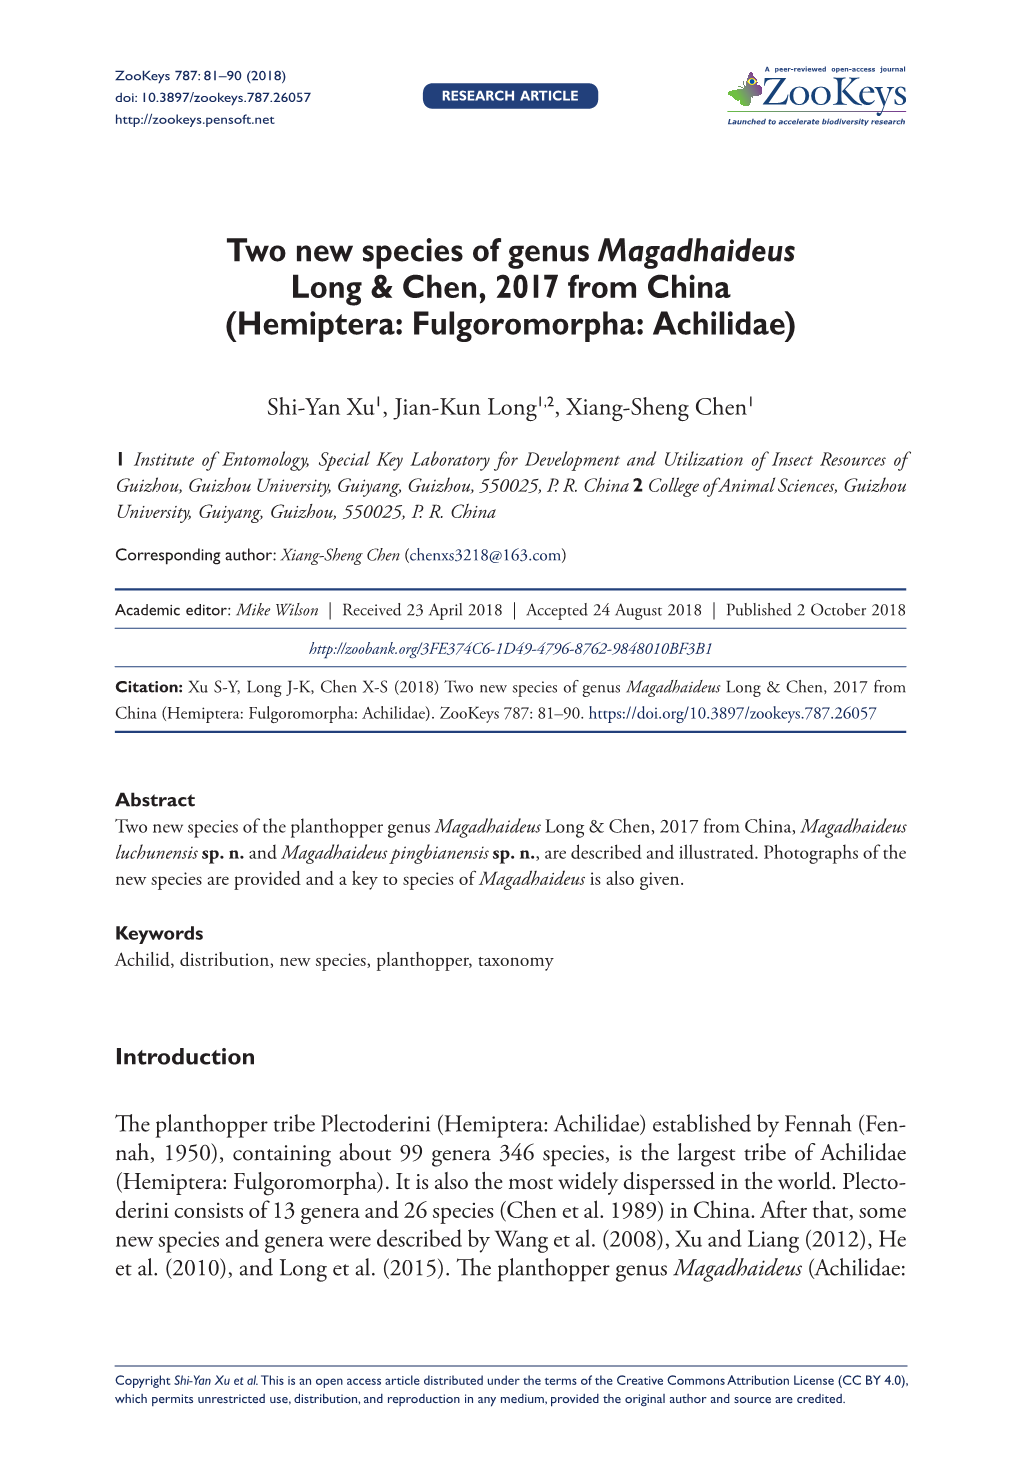 ﻿Two New Species of Genus Magadhaideus Long & Chen, 2017 from China (Hemiptera: Fulgoromorpha: Achilidae)